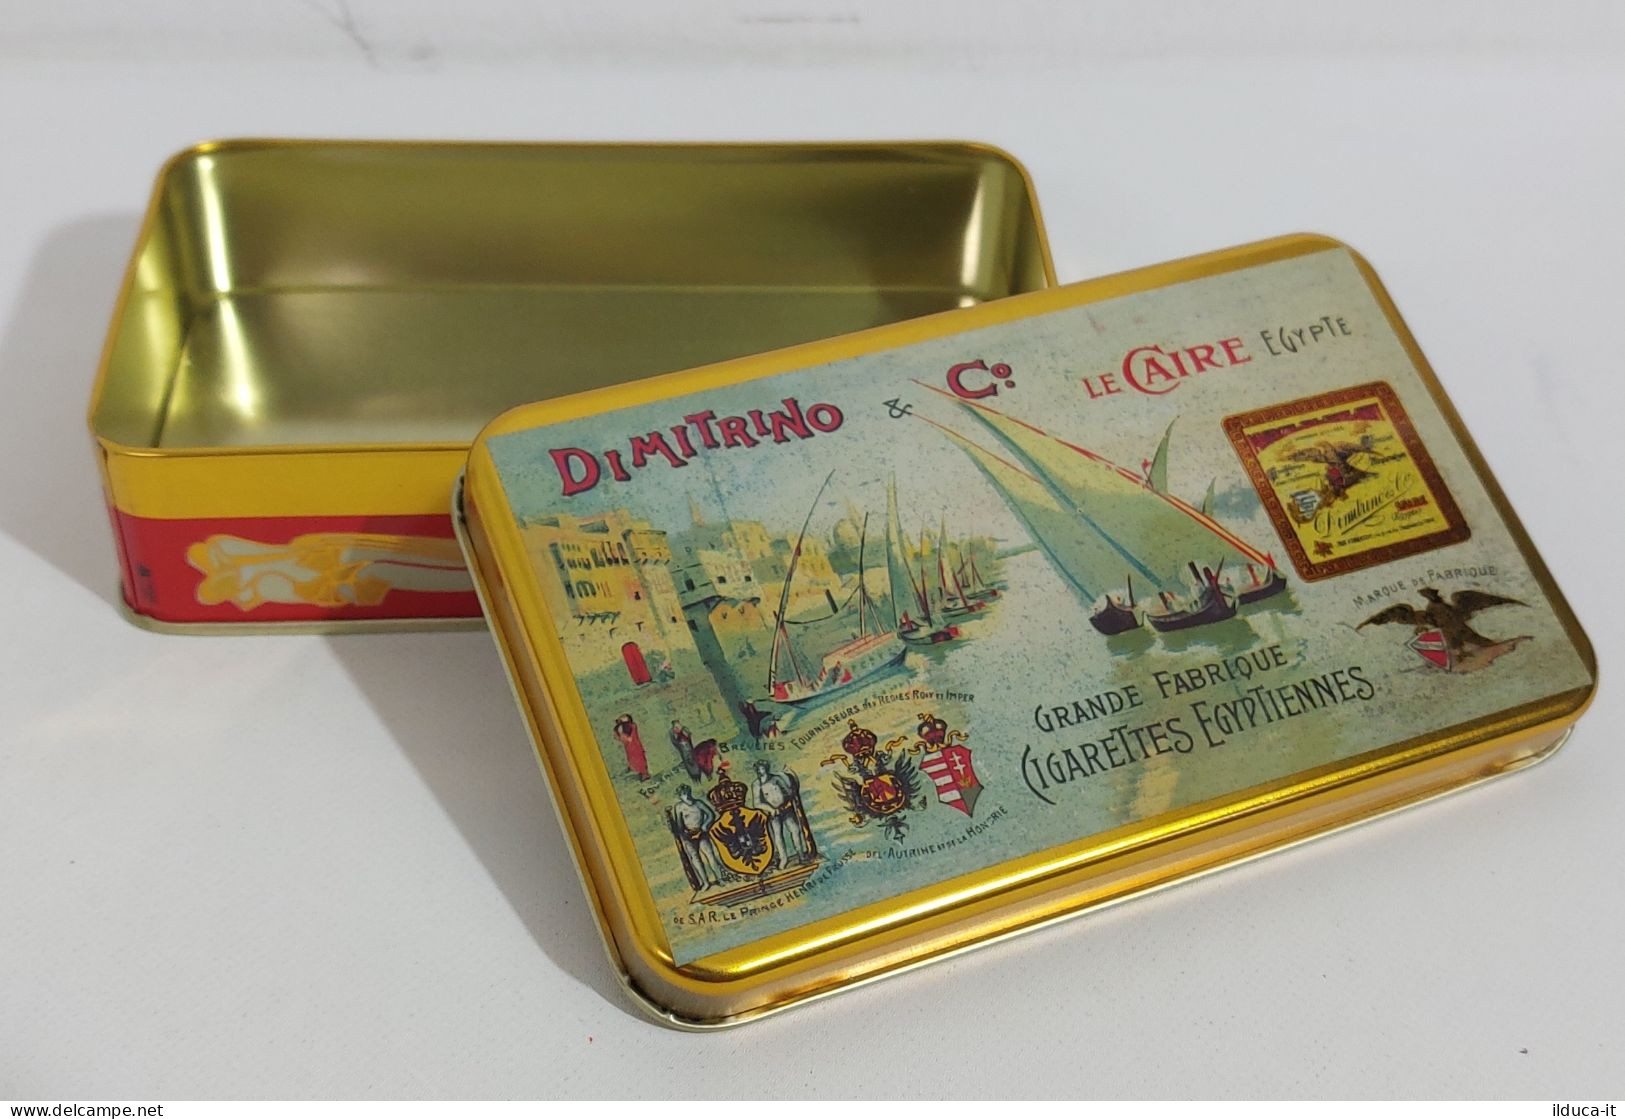 36598 Scatola Di Latta - Dimitrino & C. Le Caire Cigarettes Egypte Riproduzione - Boxes